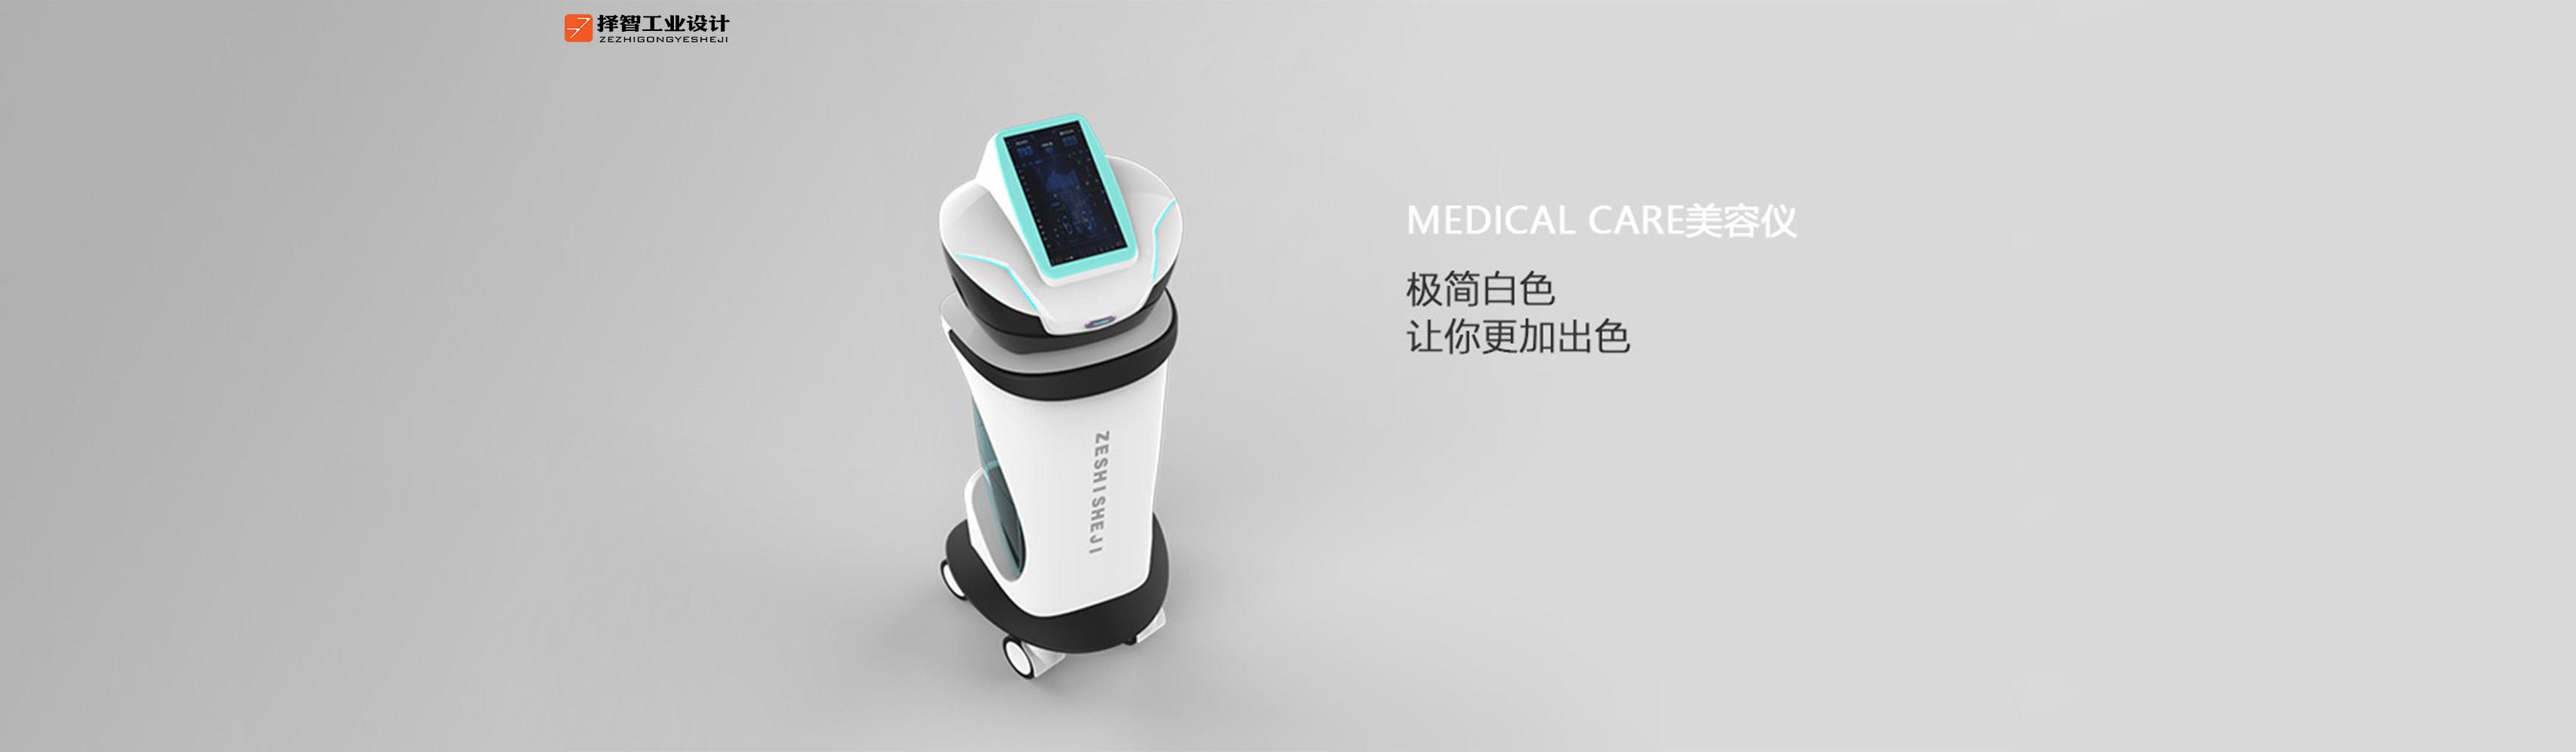 上海苏州产品设计 工业产品外观设计 结构设计 医疗美容仪产品设计